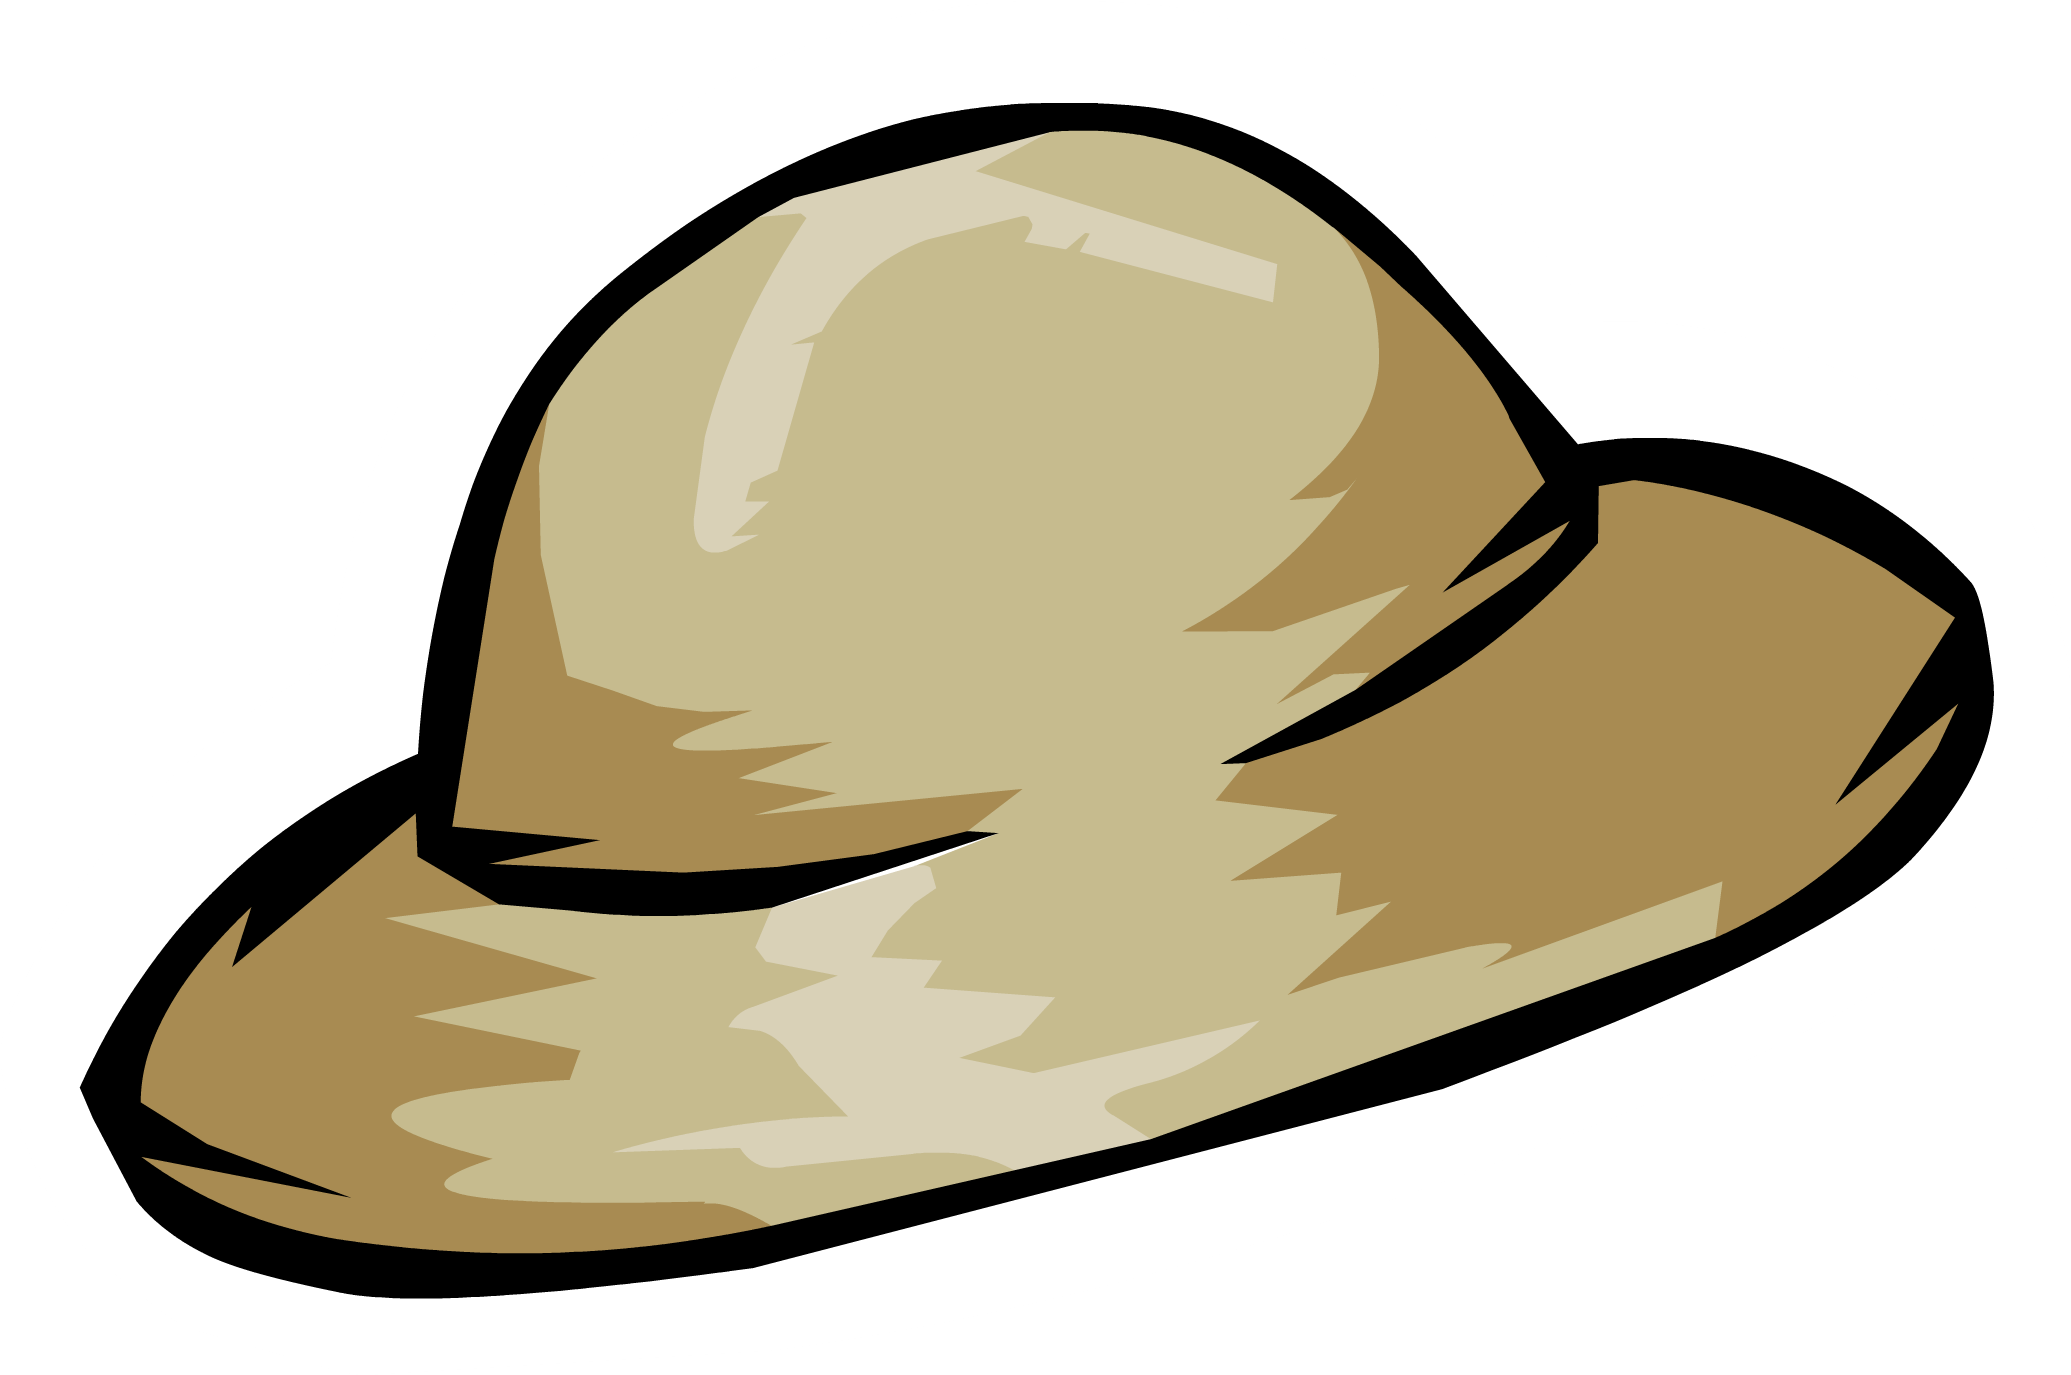 fedora clipart adventure hat